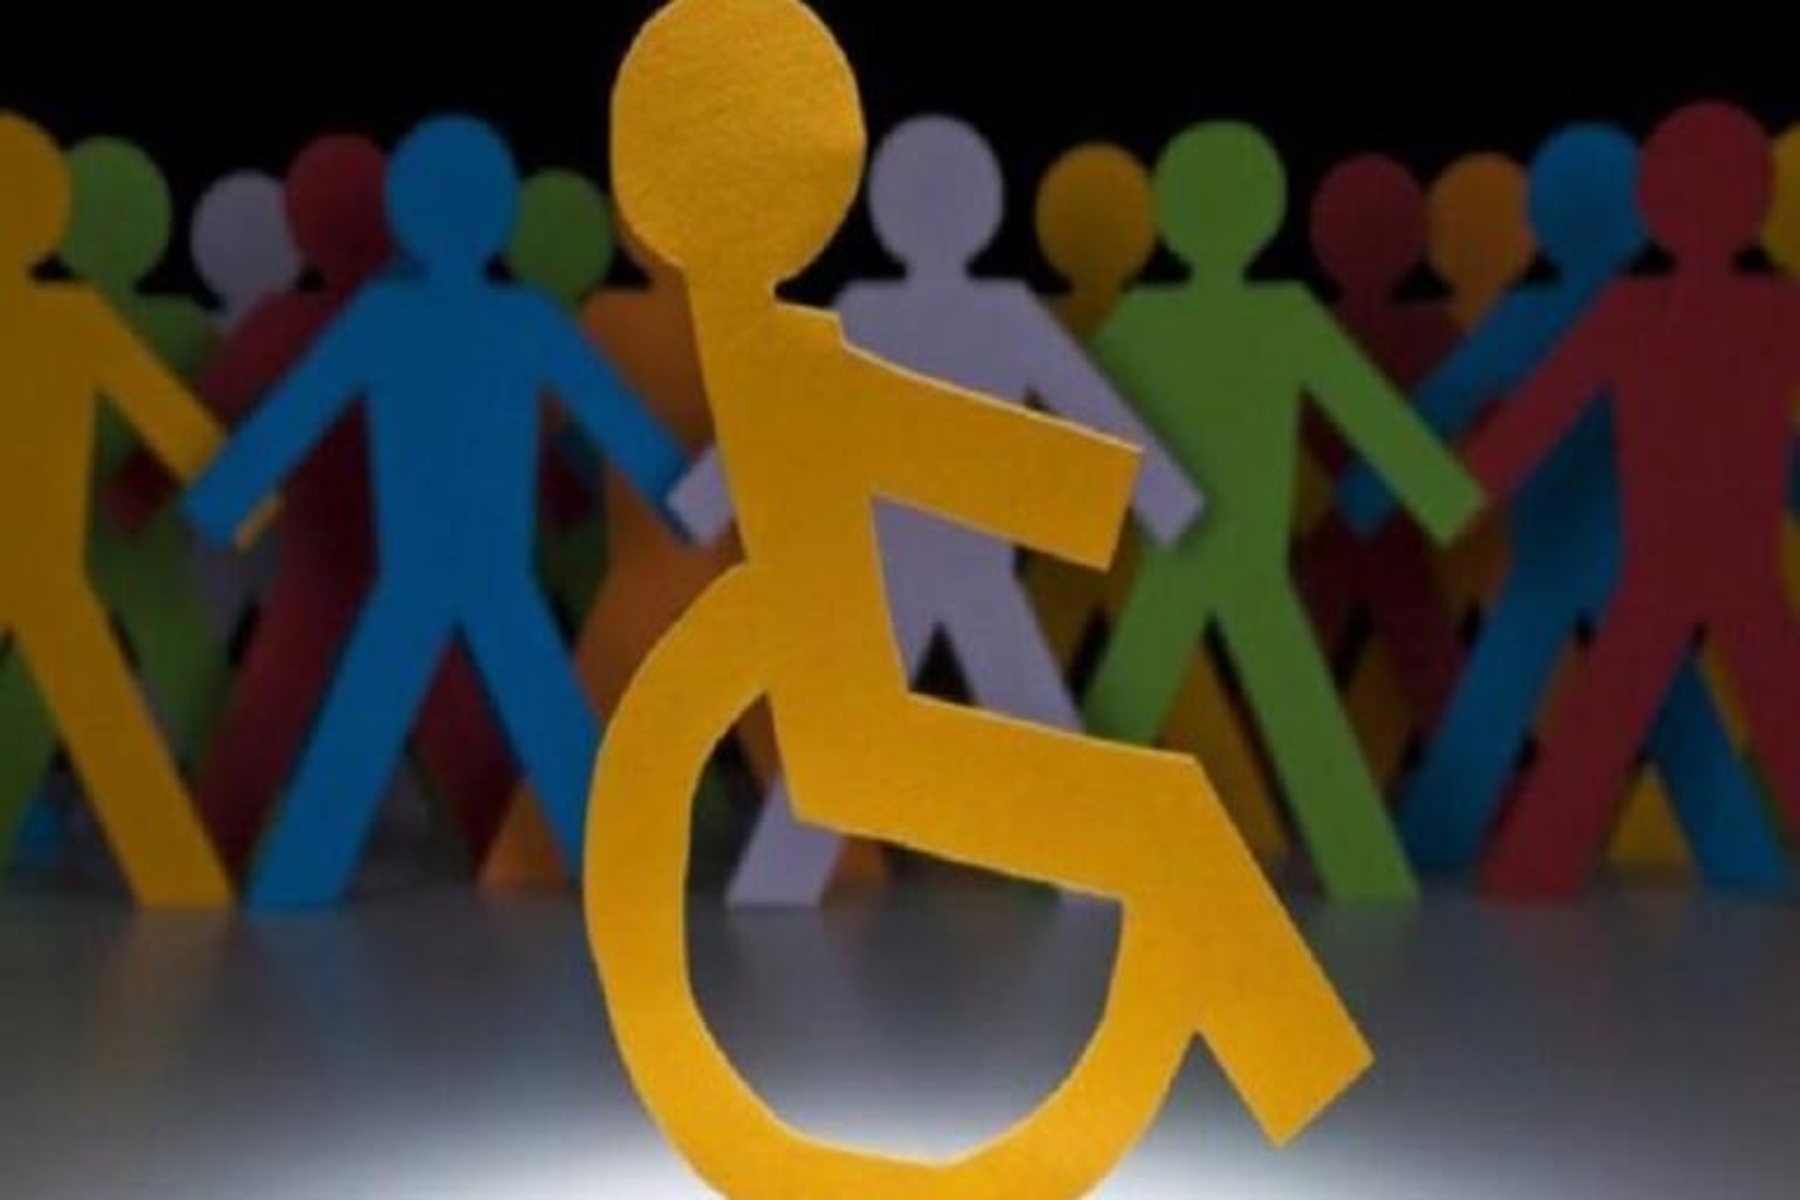 ΕΣΑμεΑ: Απαλλαγές από δίδακτρα μεταπτυχιακών και για άτομα με αναπηρία